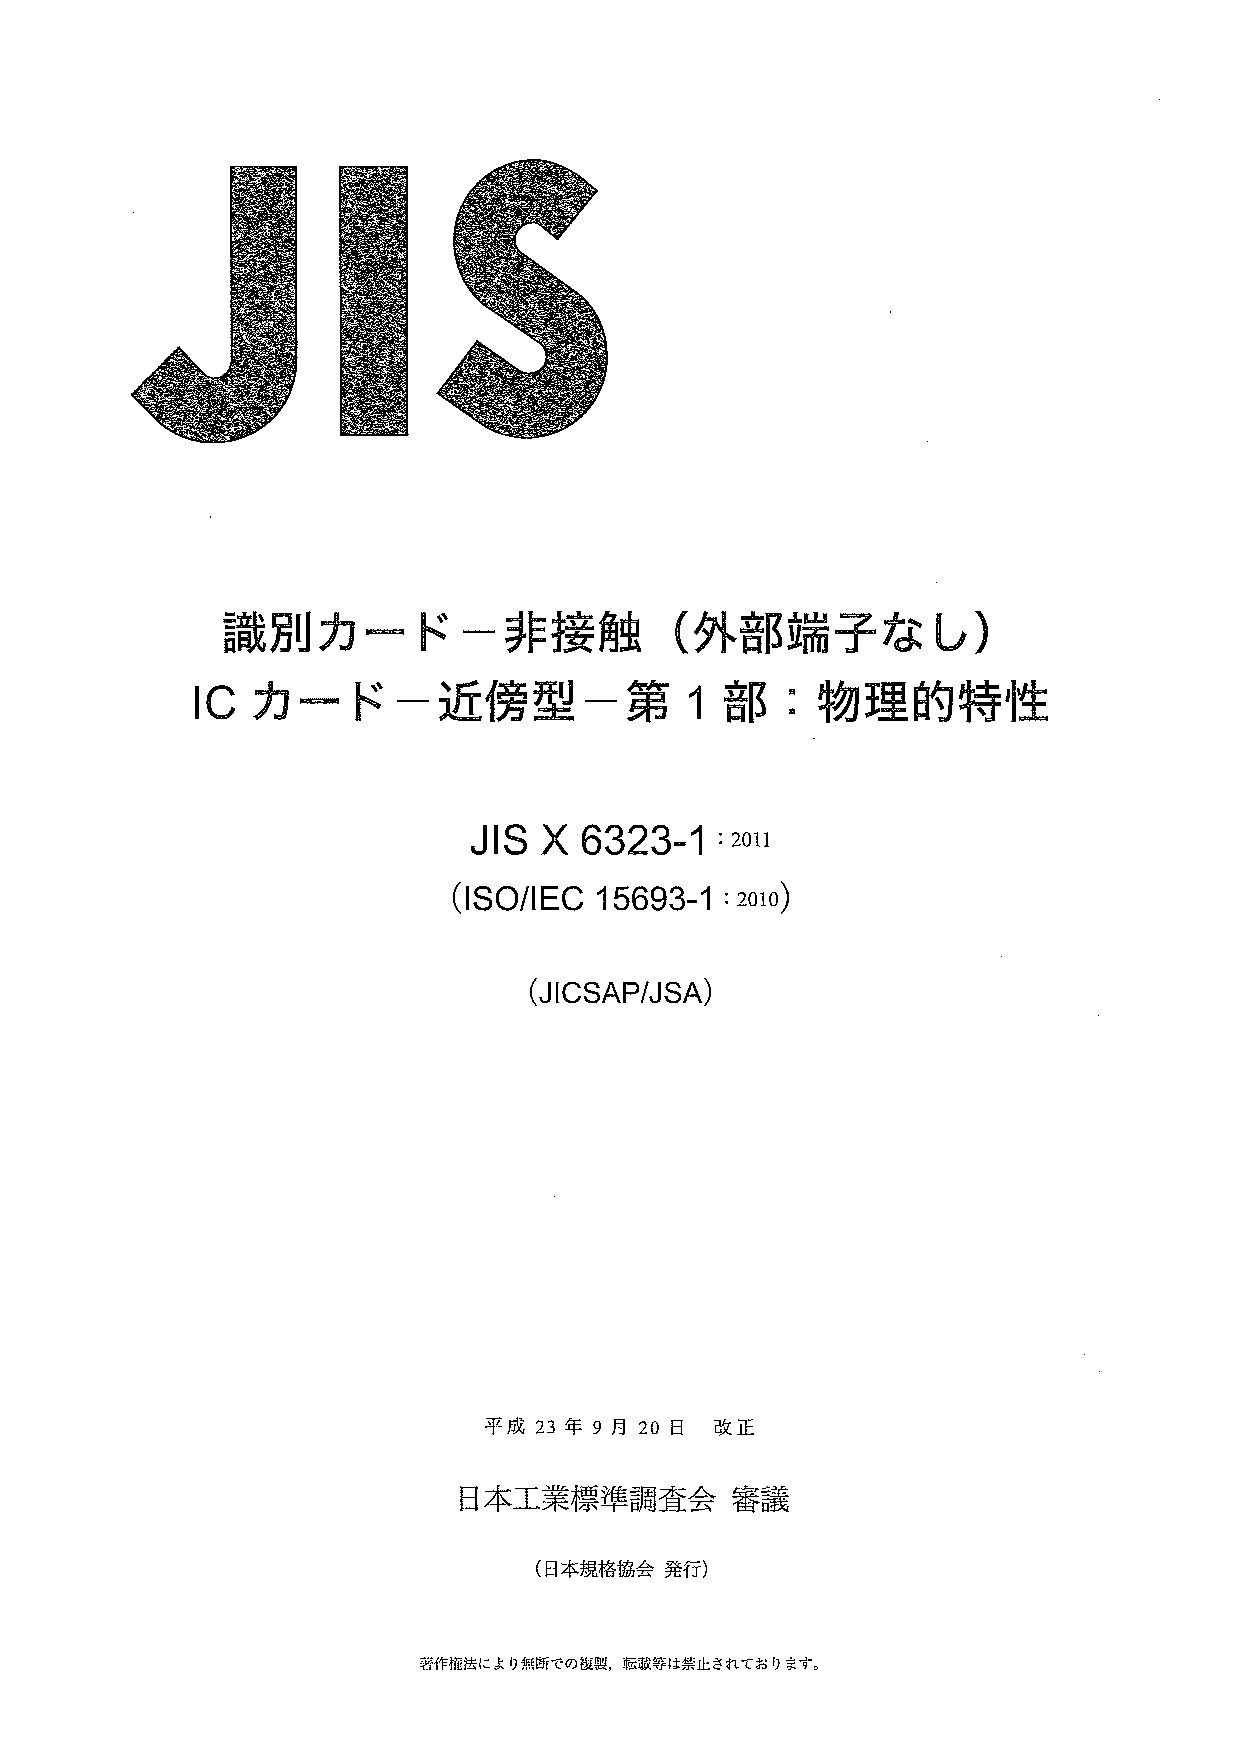 JIS X 6323-1:2011封面图